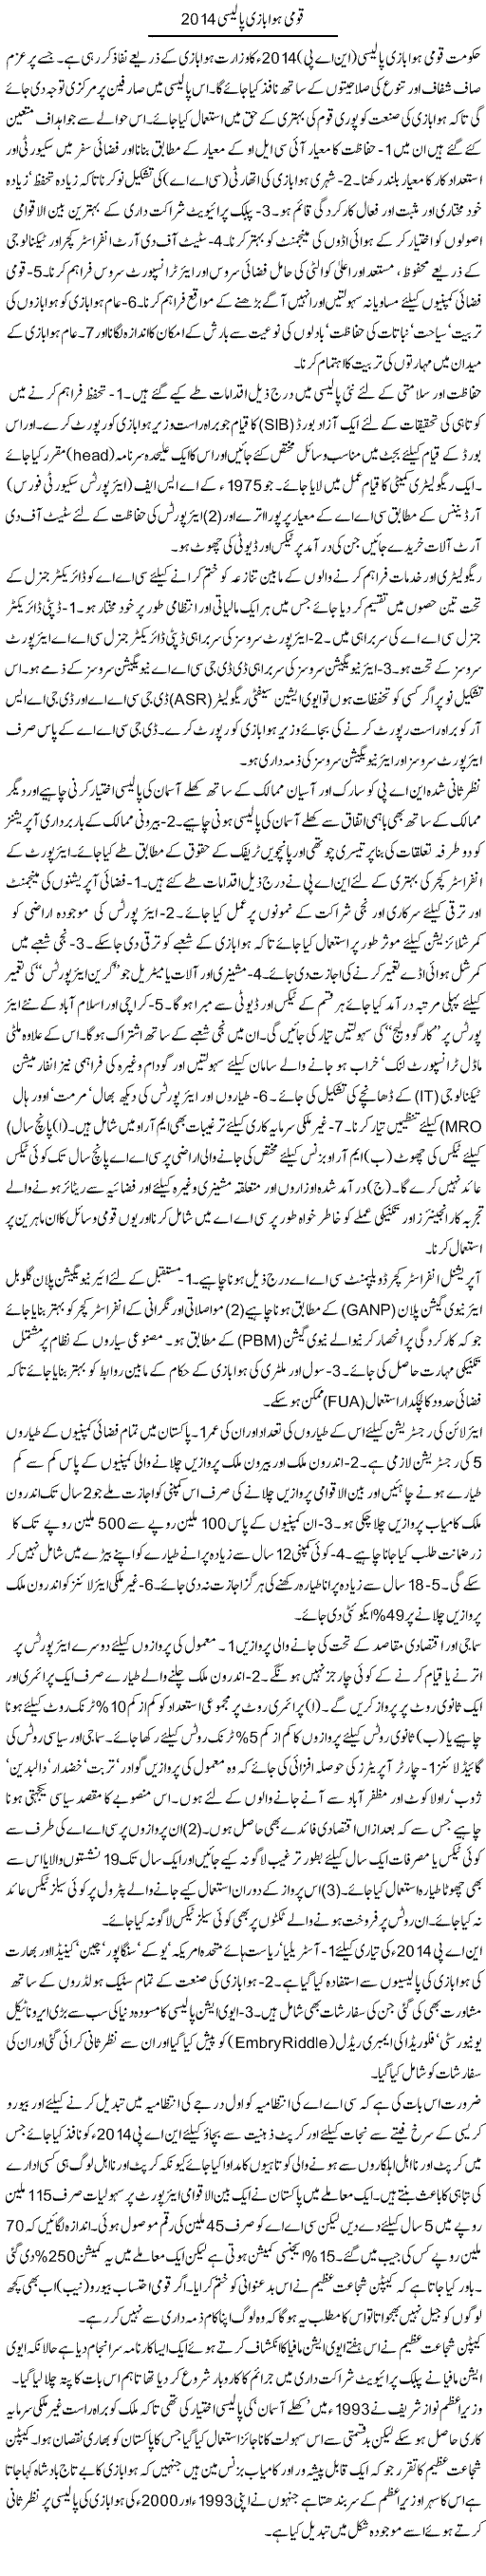 Qaumi Hawabazi Policy 2014 | Ikram Sehgal | Daily Urdu Columns